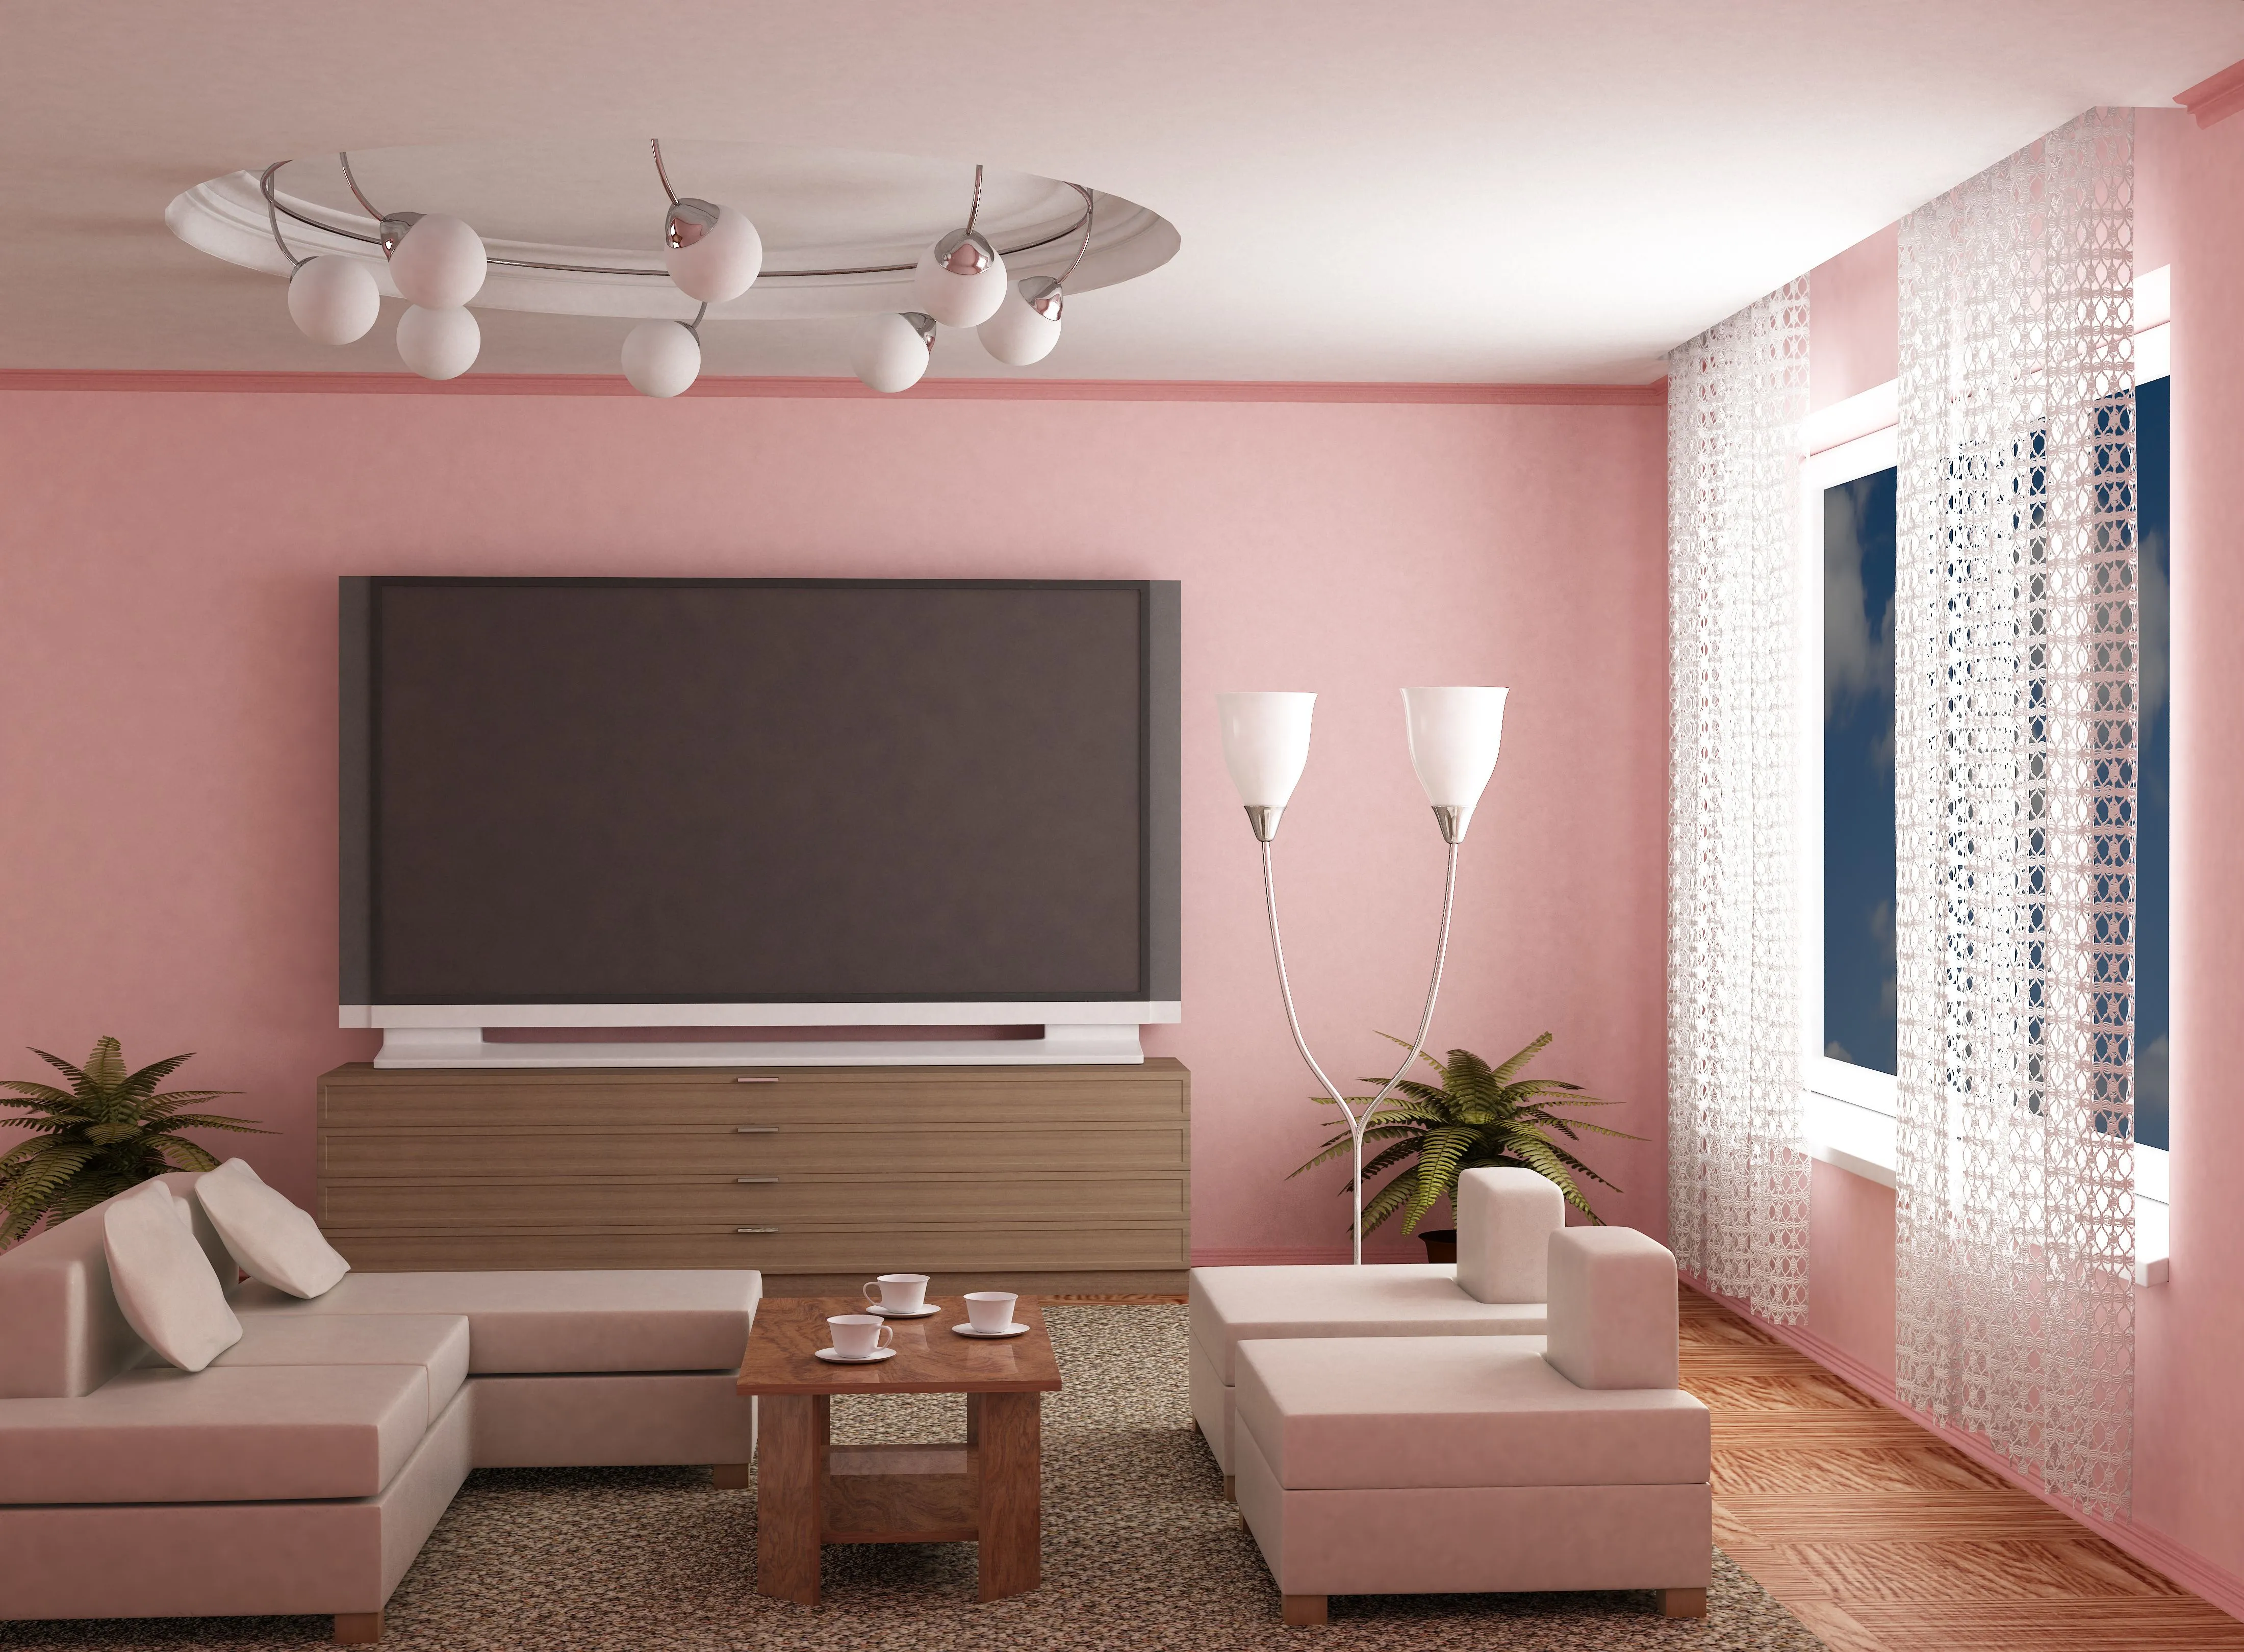 4400 64. Крашенные стены в гостиной. Комната с розовыми стенами. Цвет стен в зале. Покрашенные стены в интерьере.